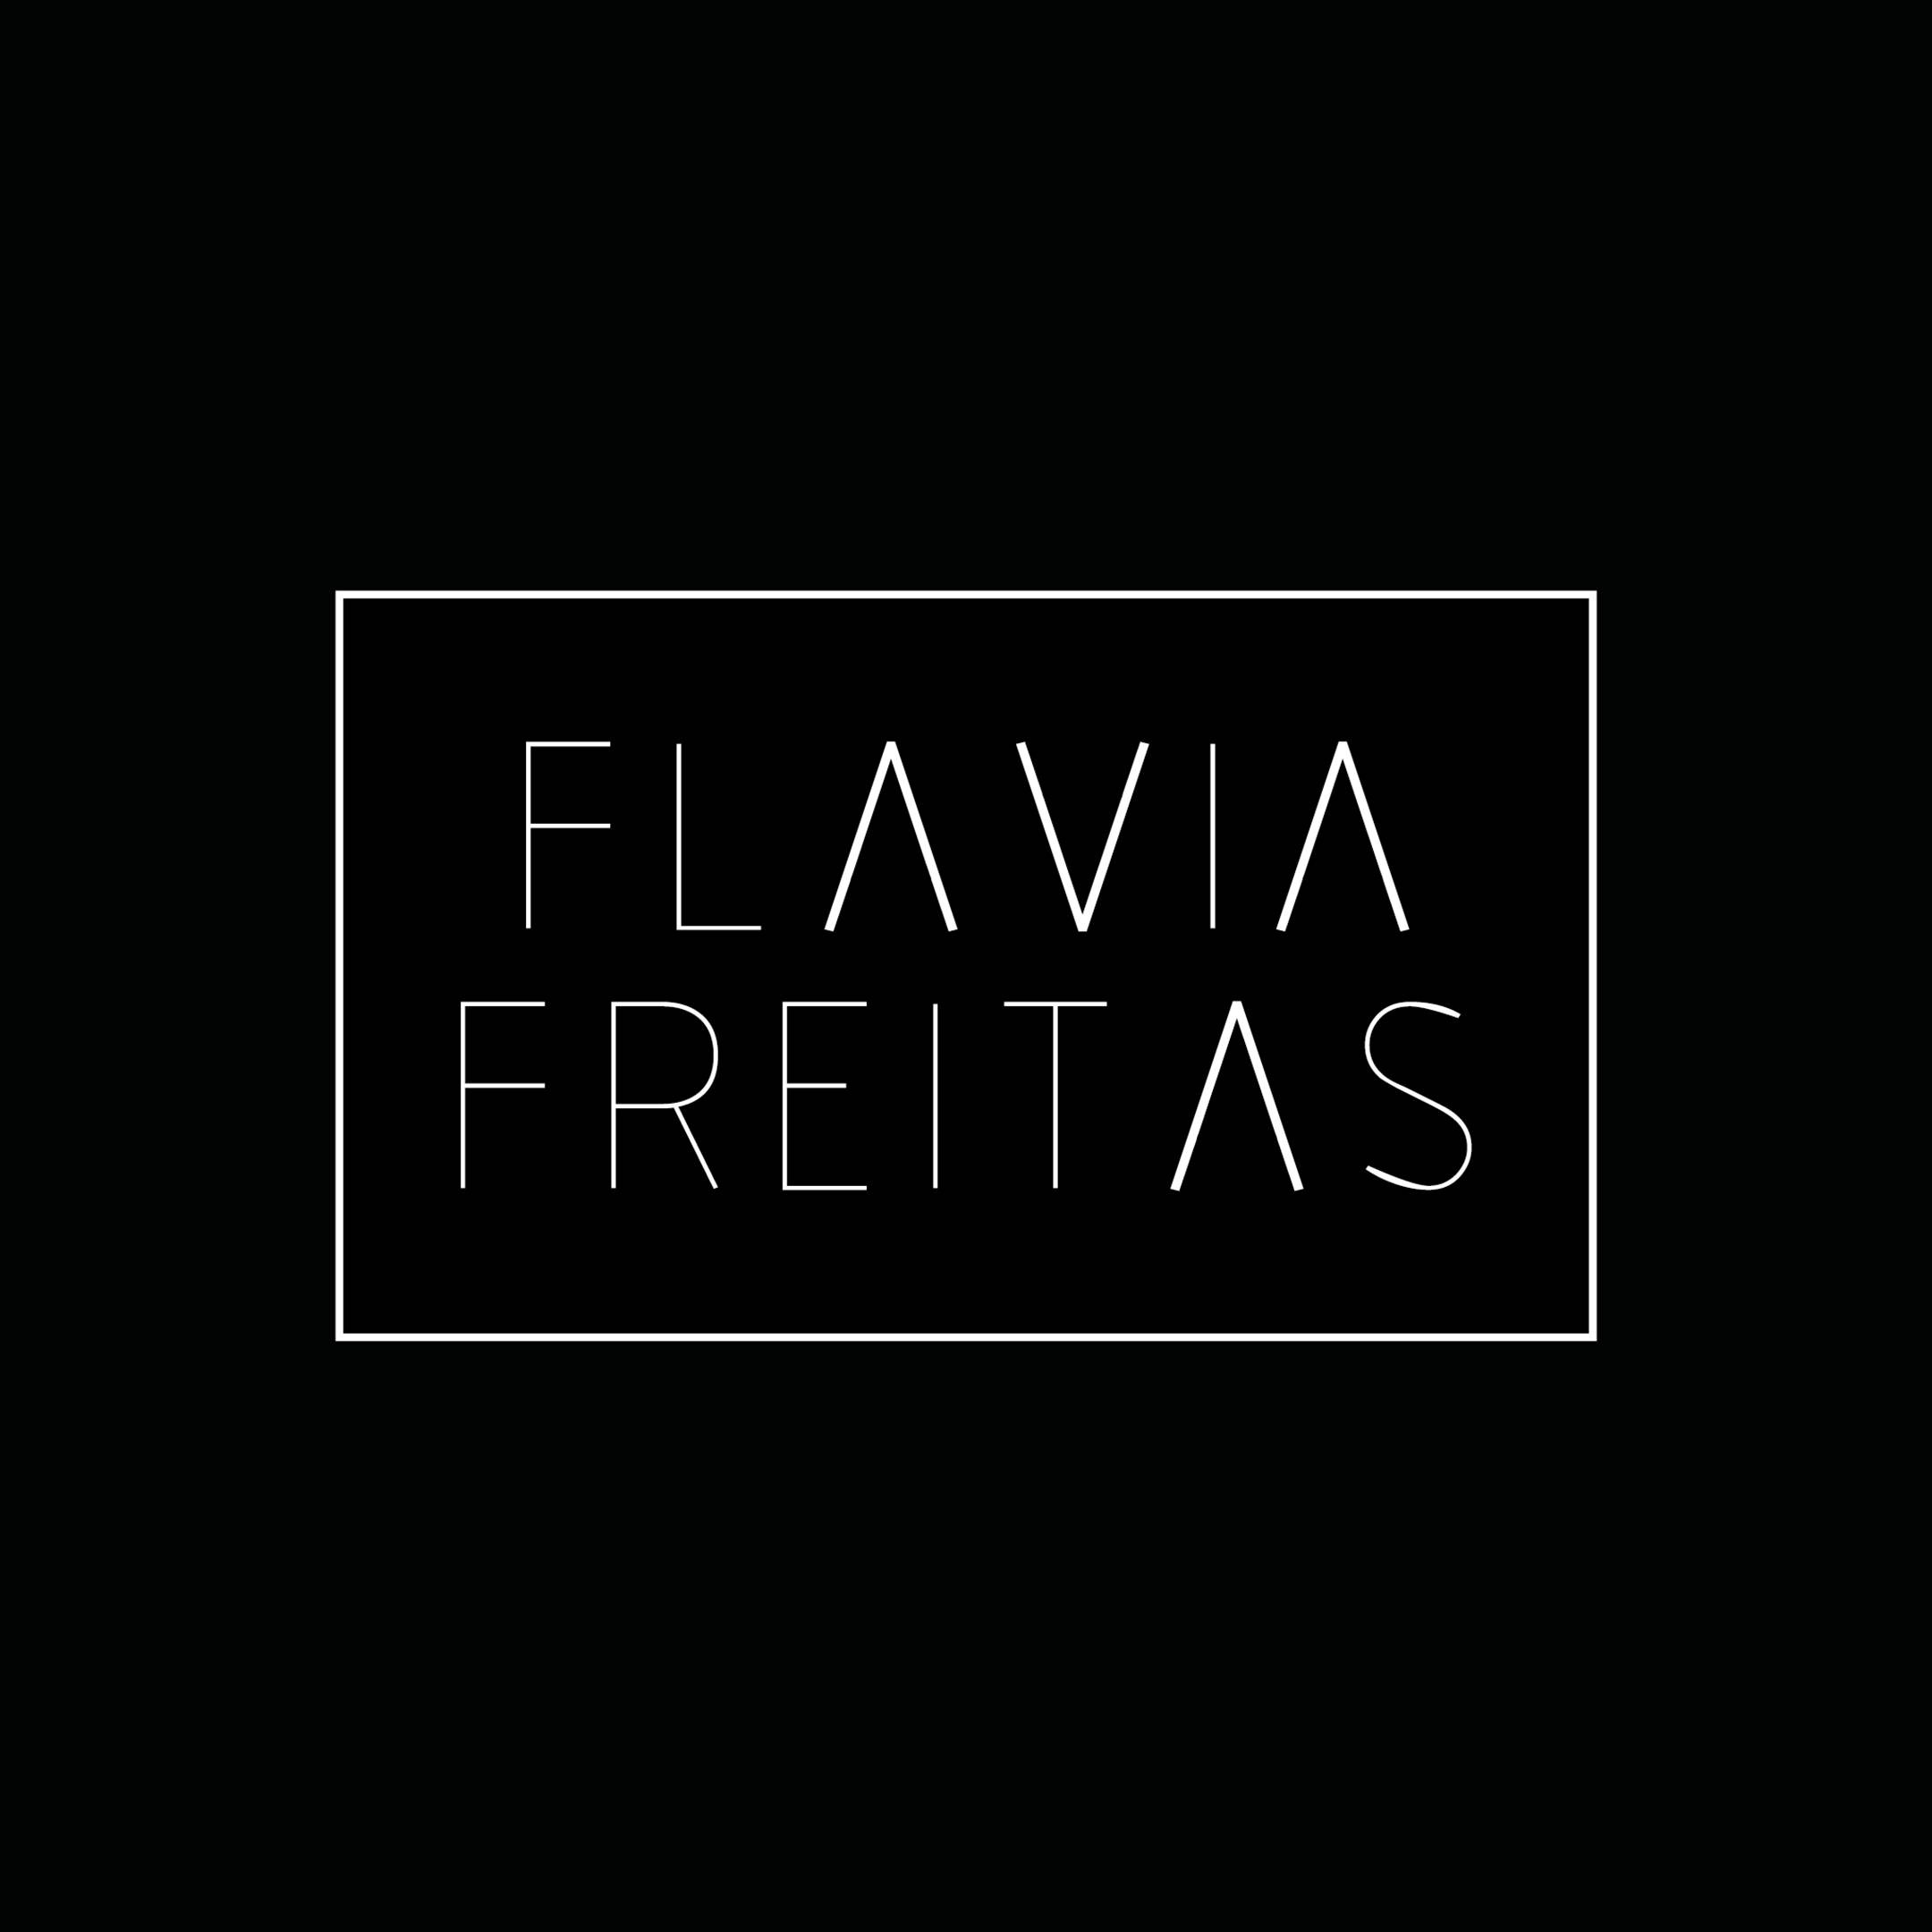 Flavia Freitas